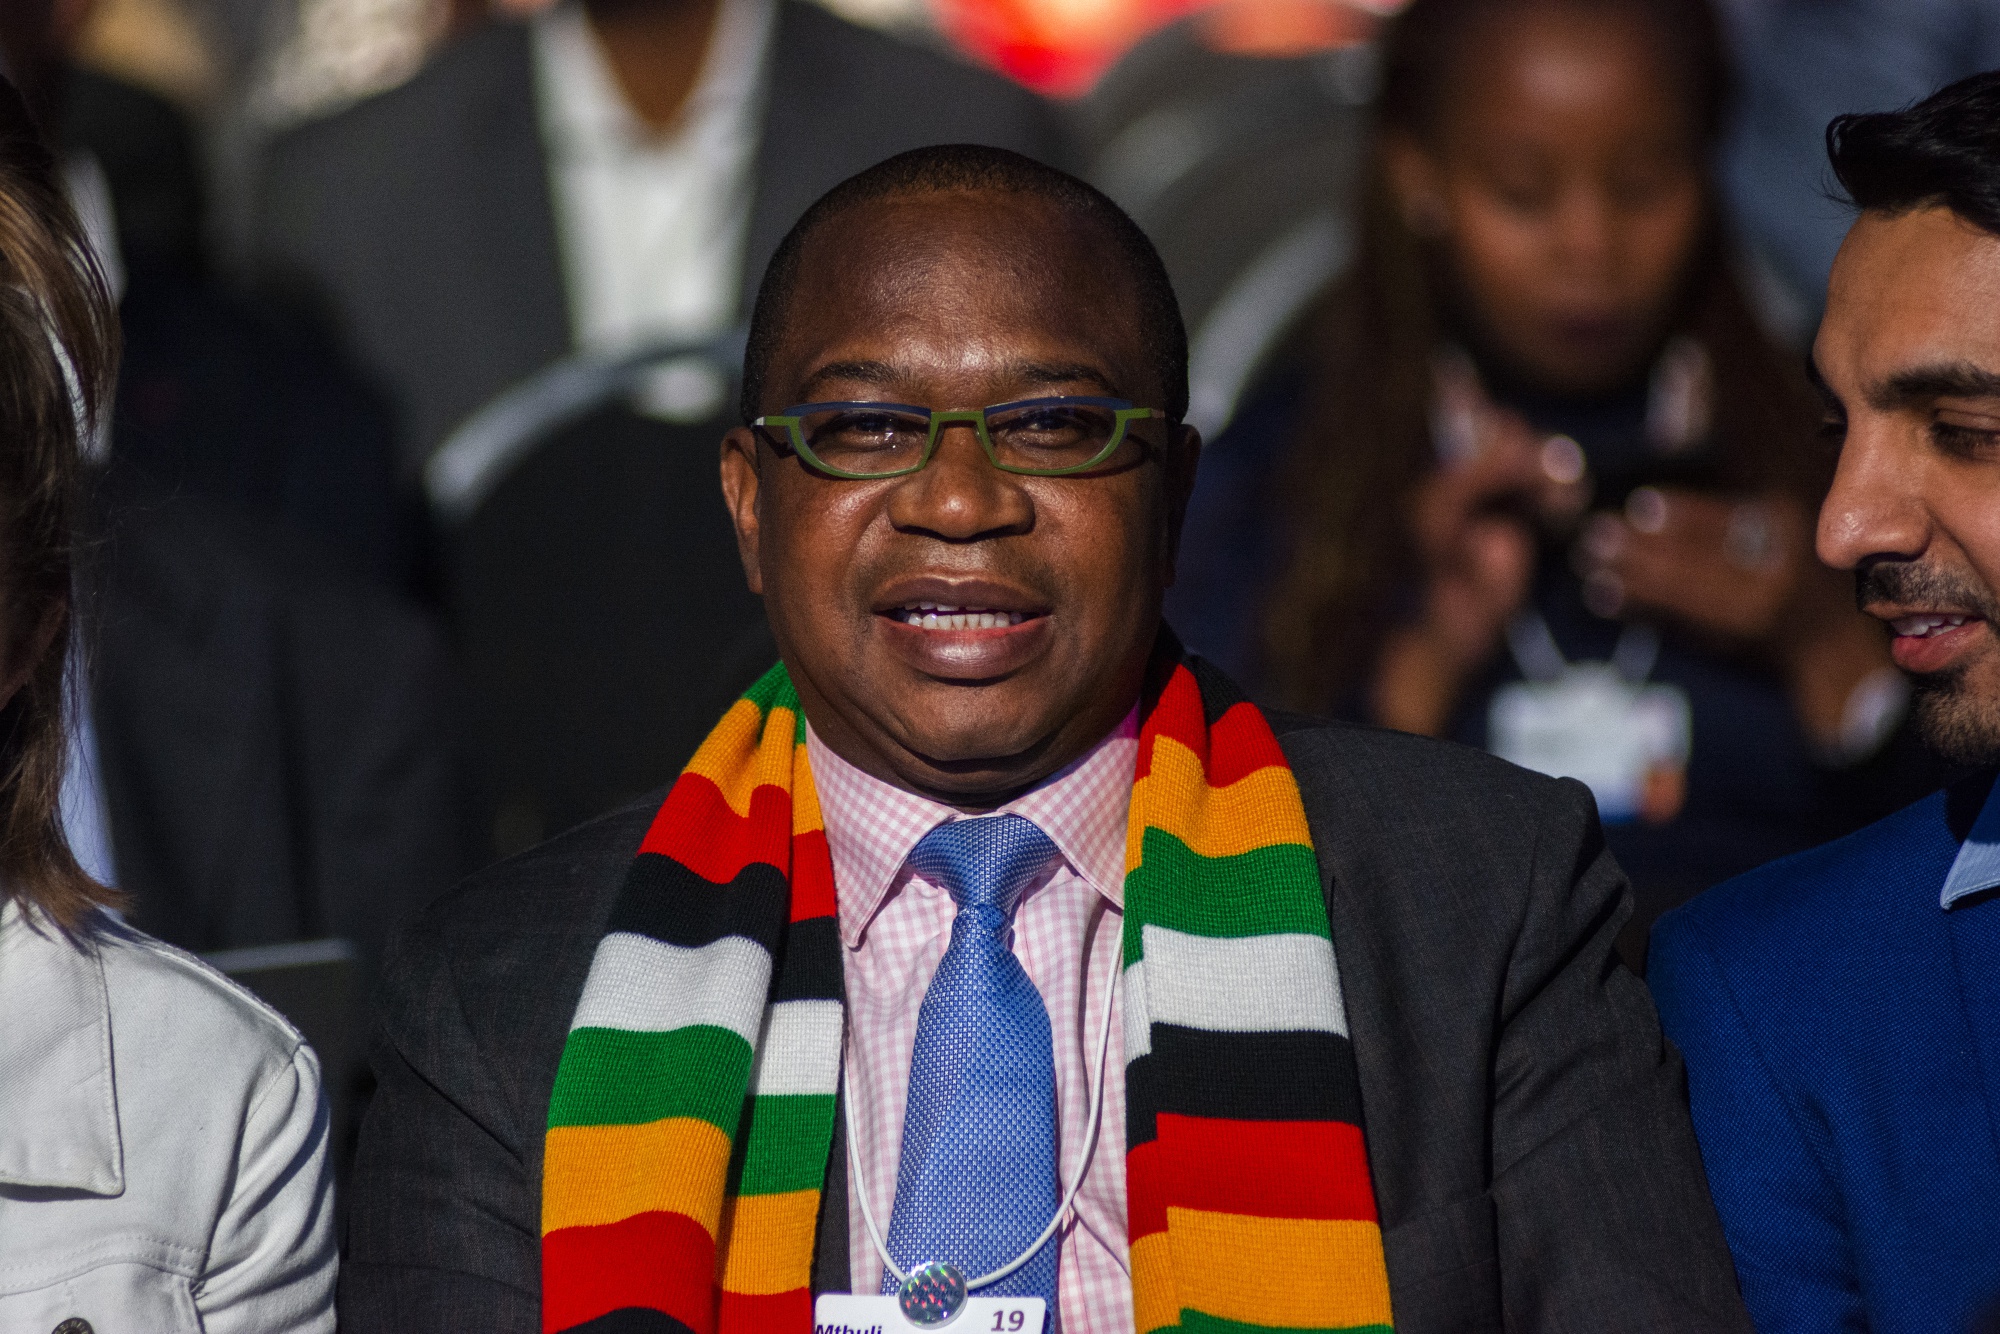 Mthuli Ncube, Zimbabwe's finance minister